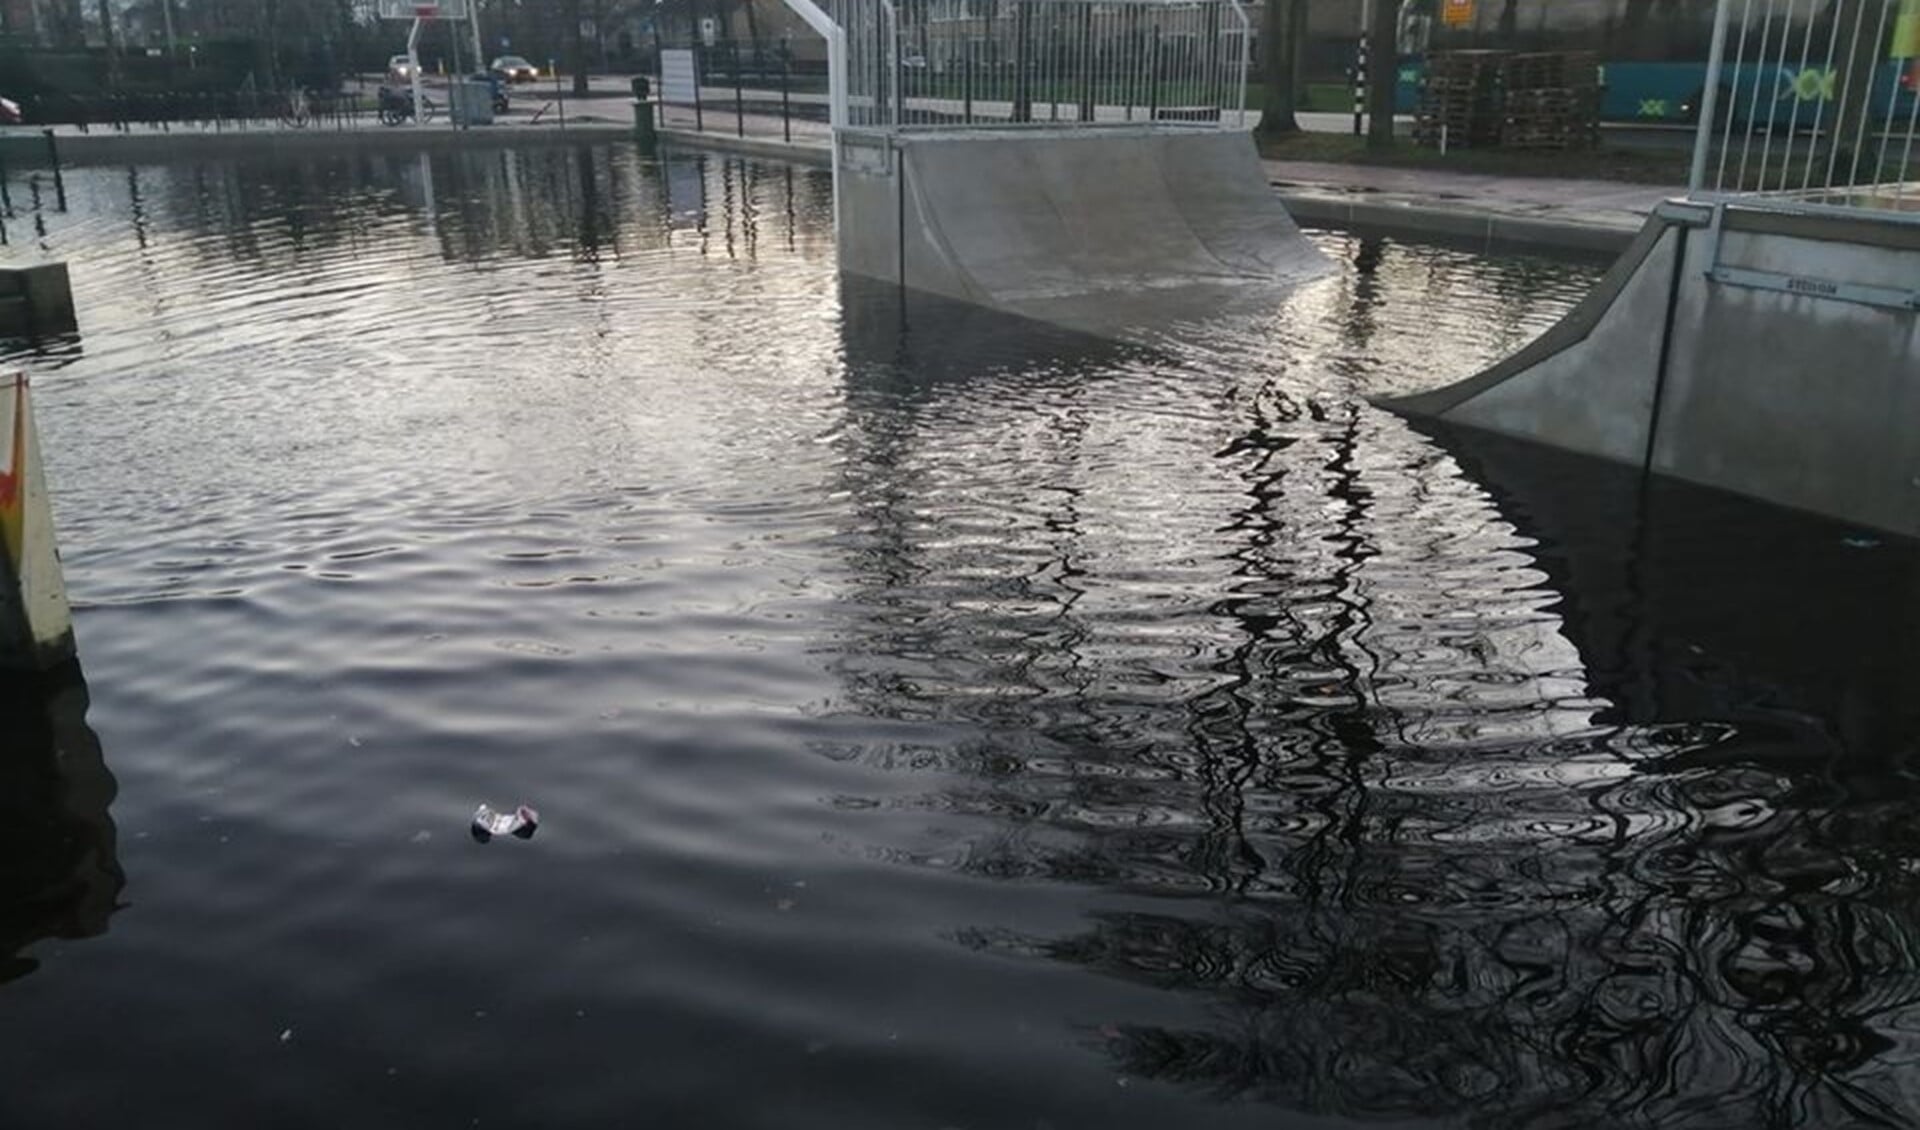 De skatebaan vangt ook het regenwater op.